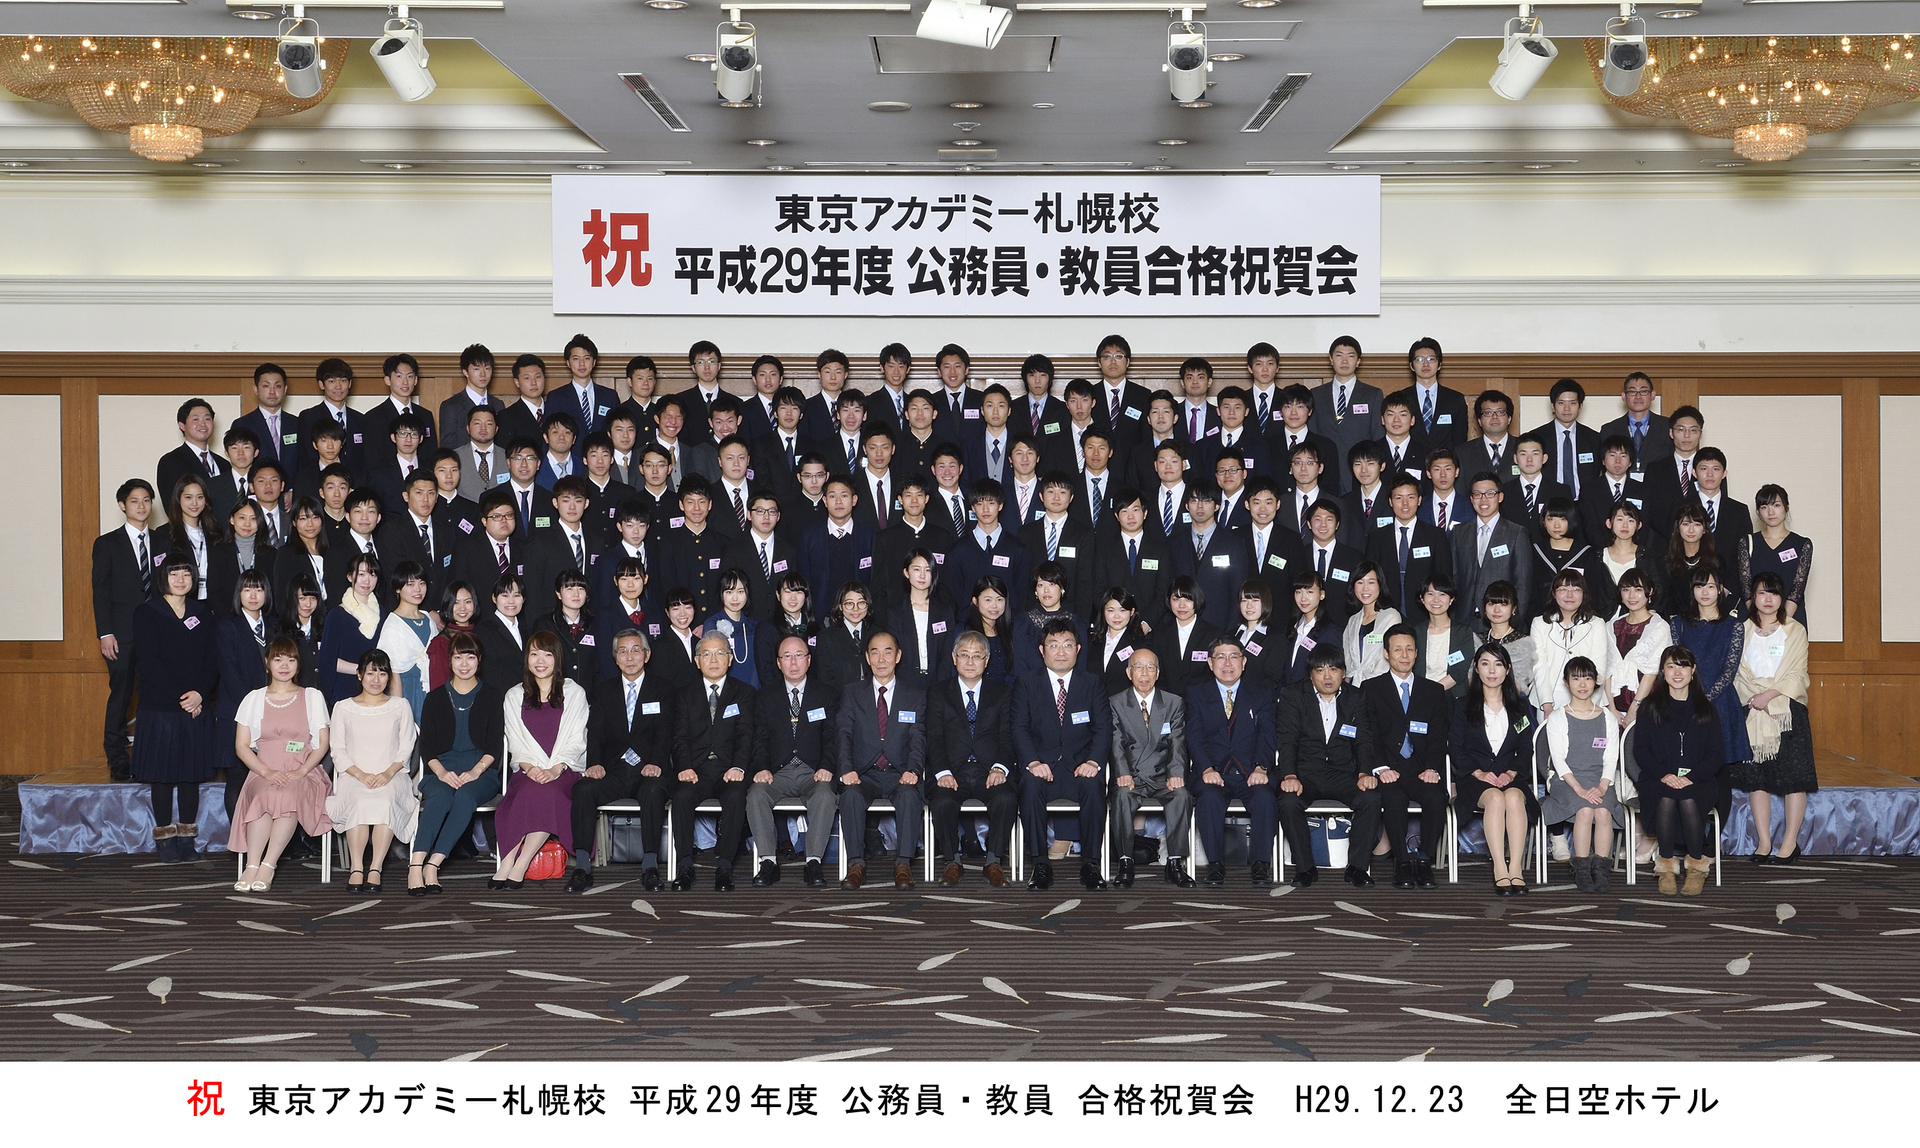 最終合格 次は皆さんの番です 東京アカデミー札幌校 公務員 教員 各種国家試験対策 のブログ